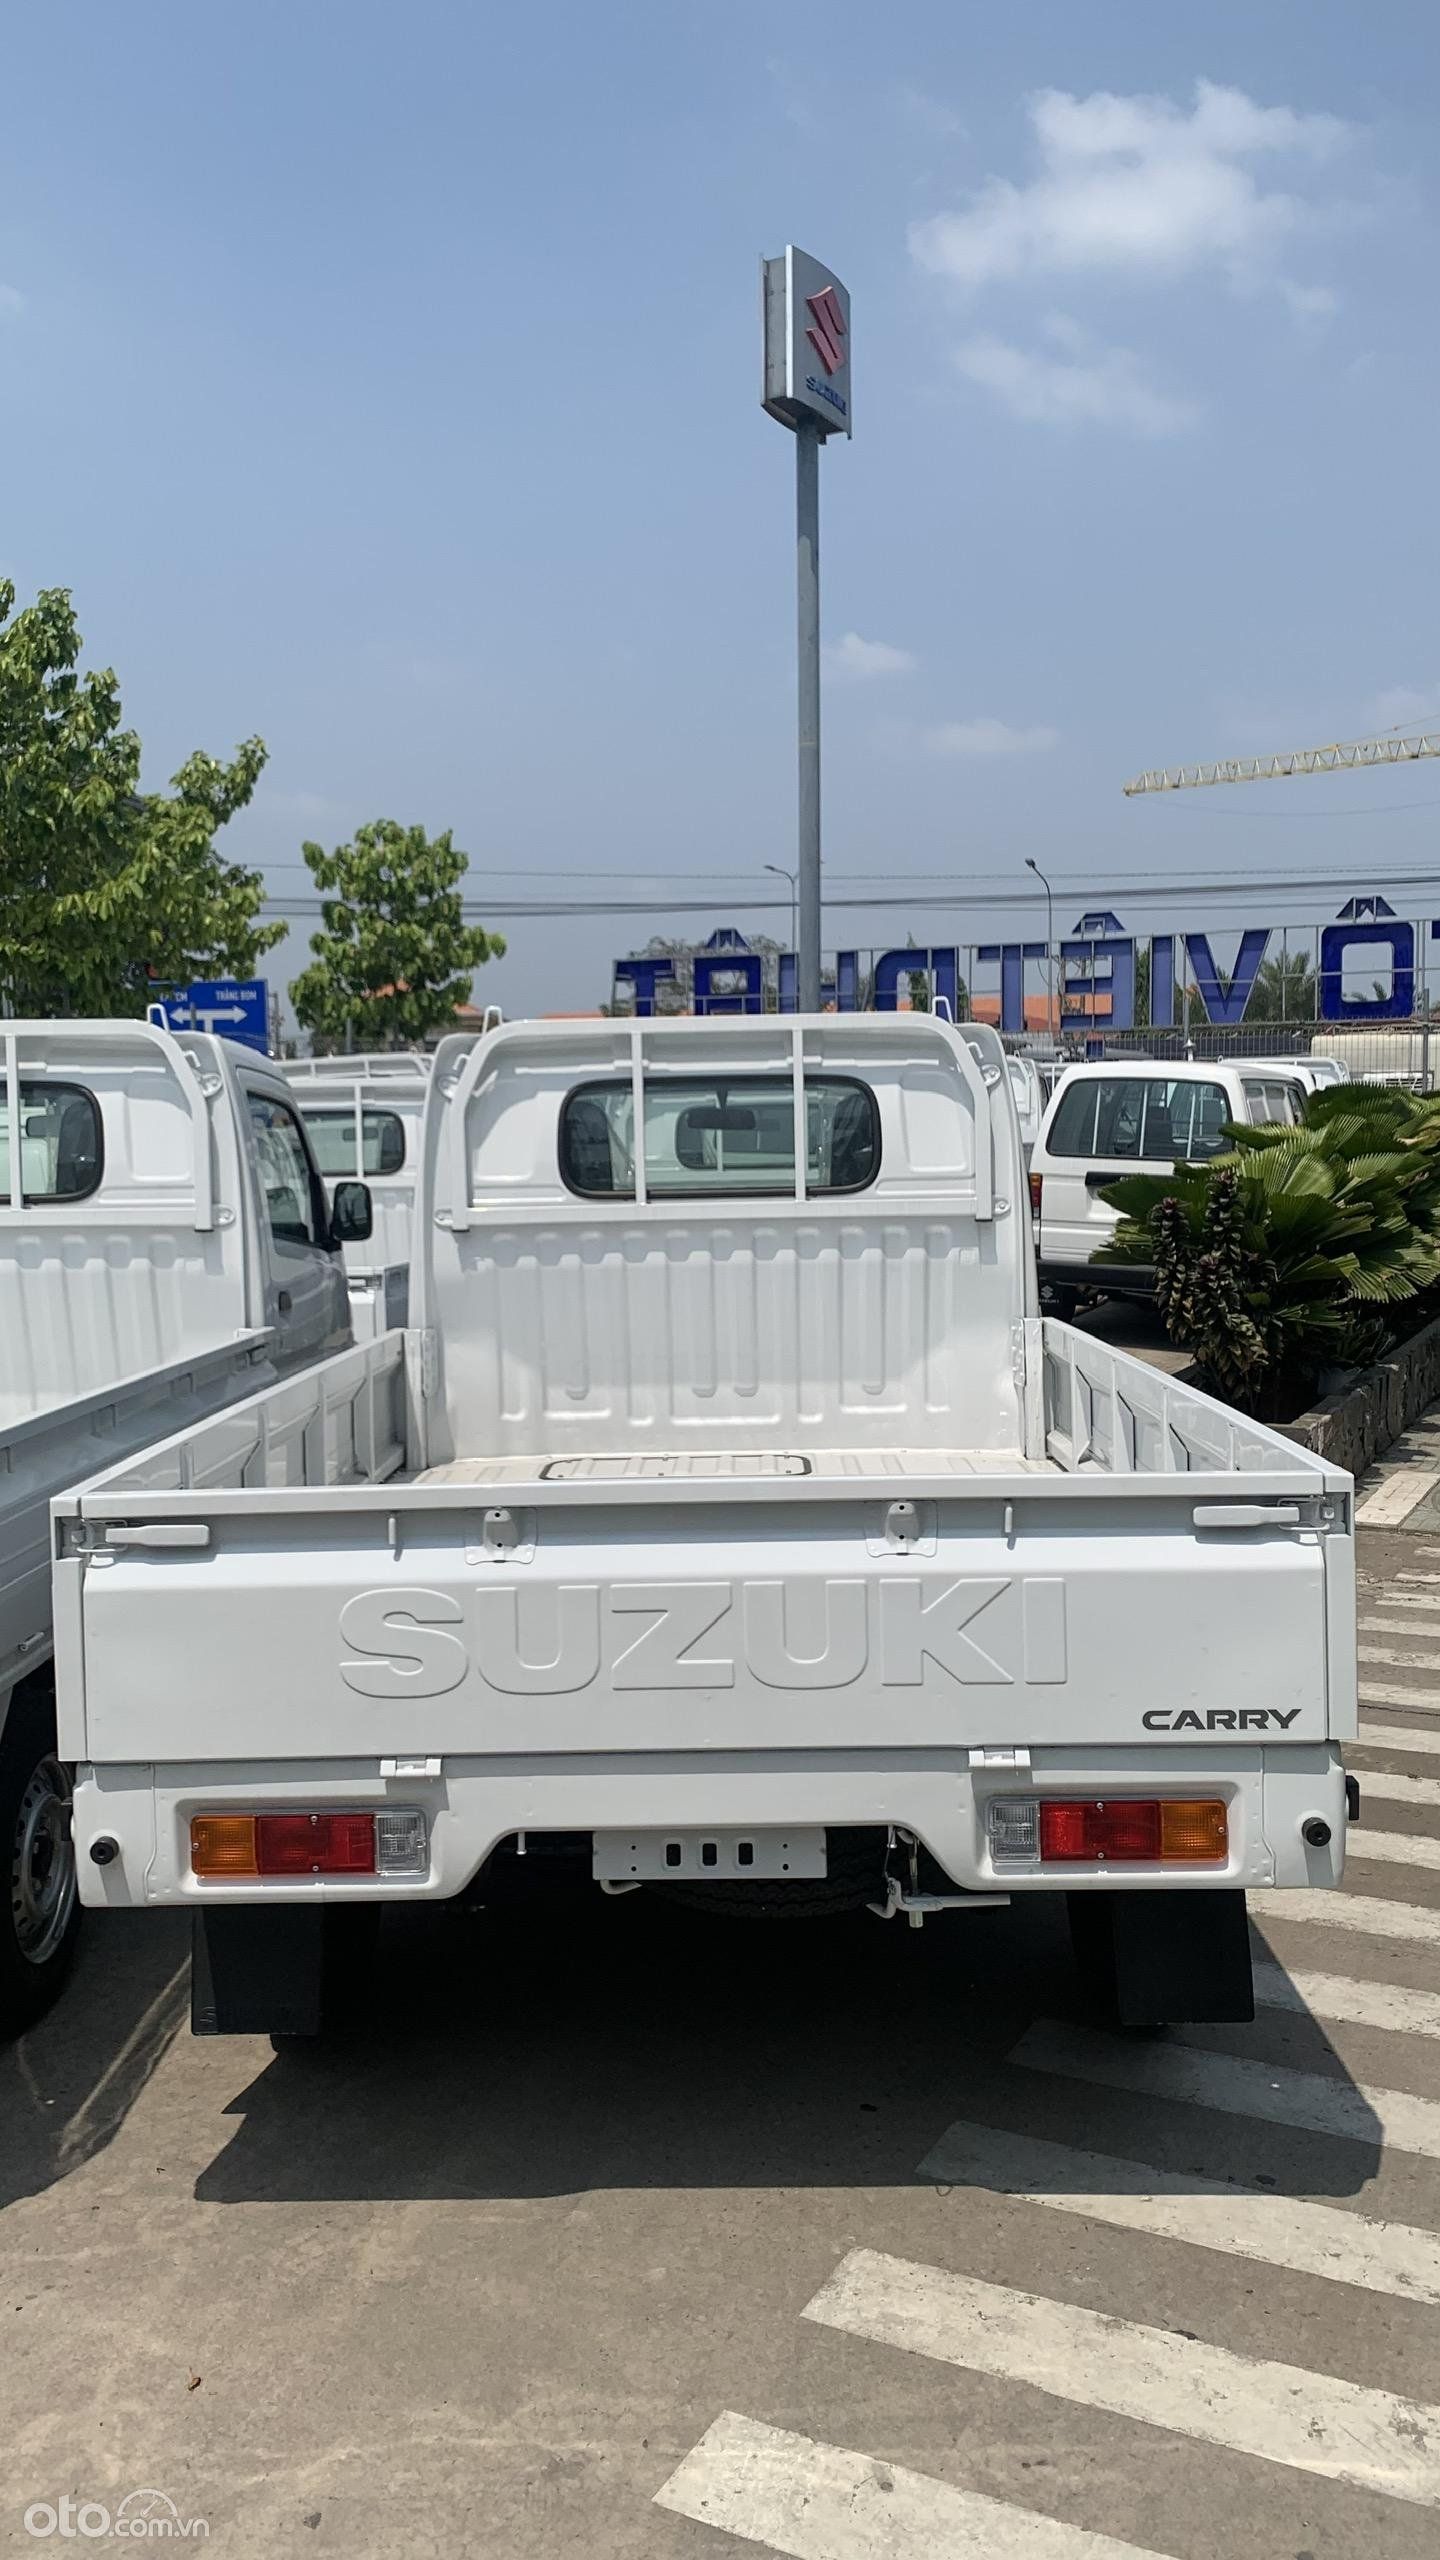 Suzuki Super Carry Pro 2022 - Ưu đãi tiền mặt - Tặng phụ kiện giá trị cao - Tặng bảo hiểm thân vỏ